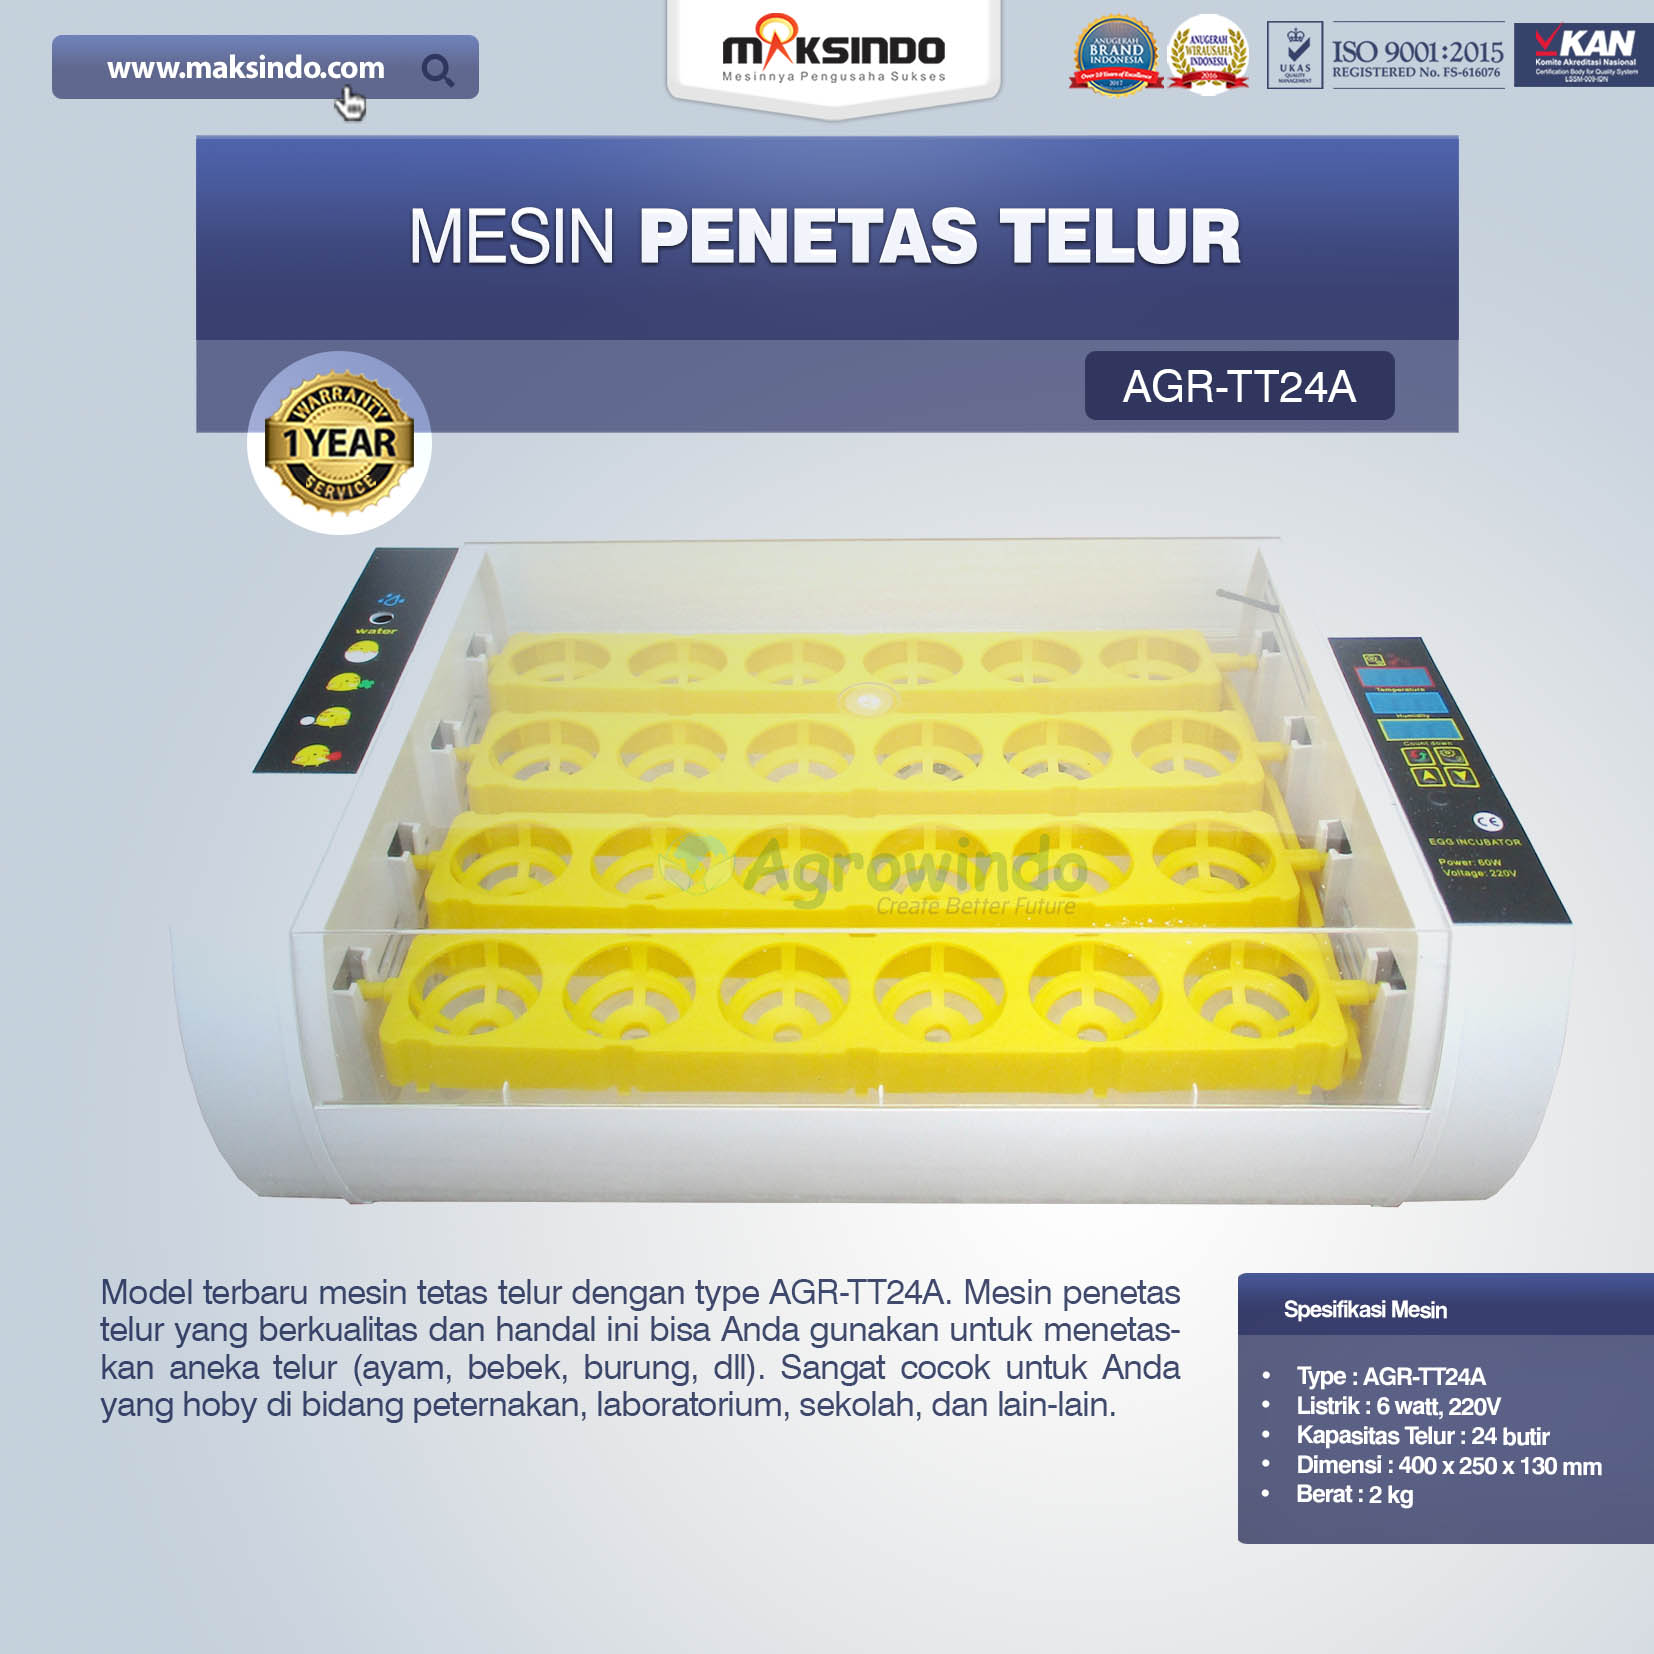 Jual Mesin Penetas Telur AGR-TT24A Di Pekanbaru